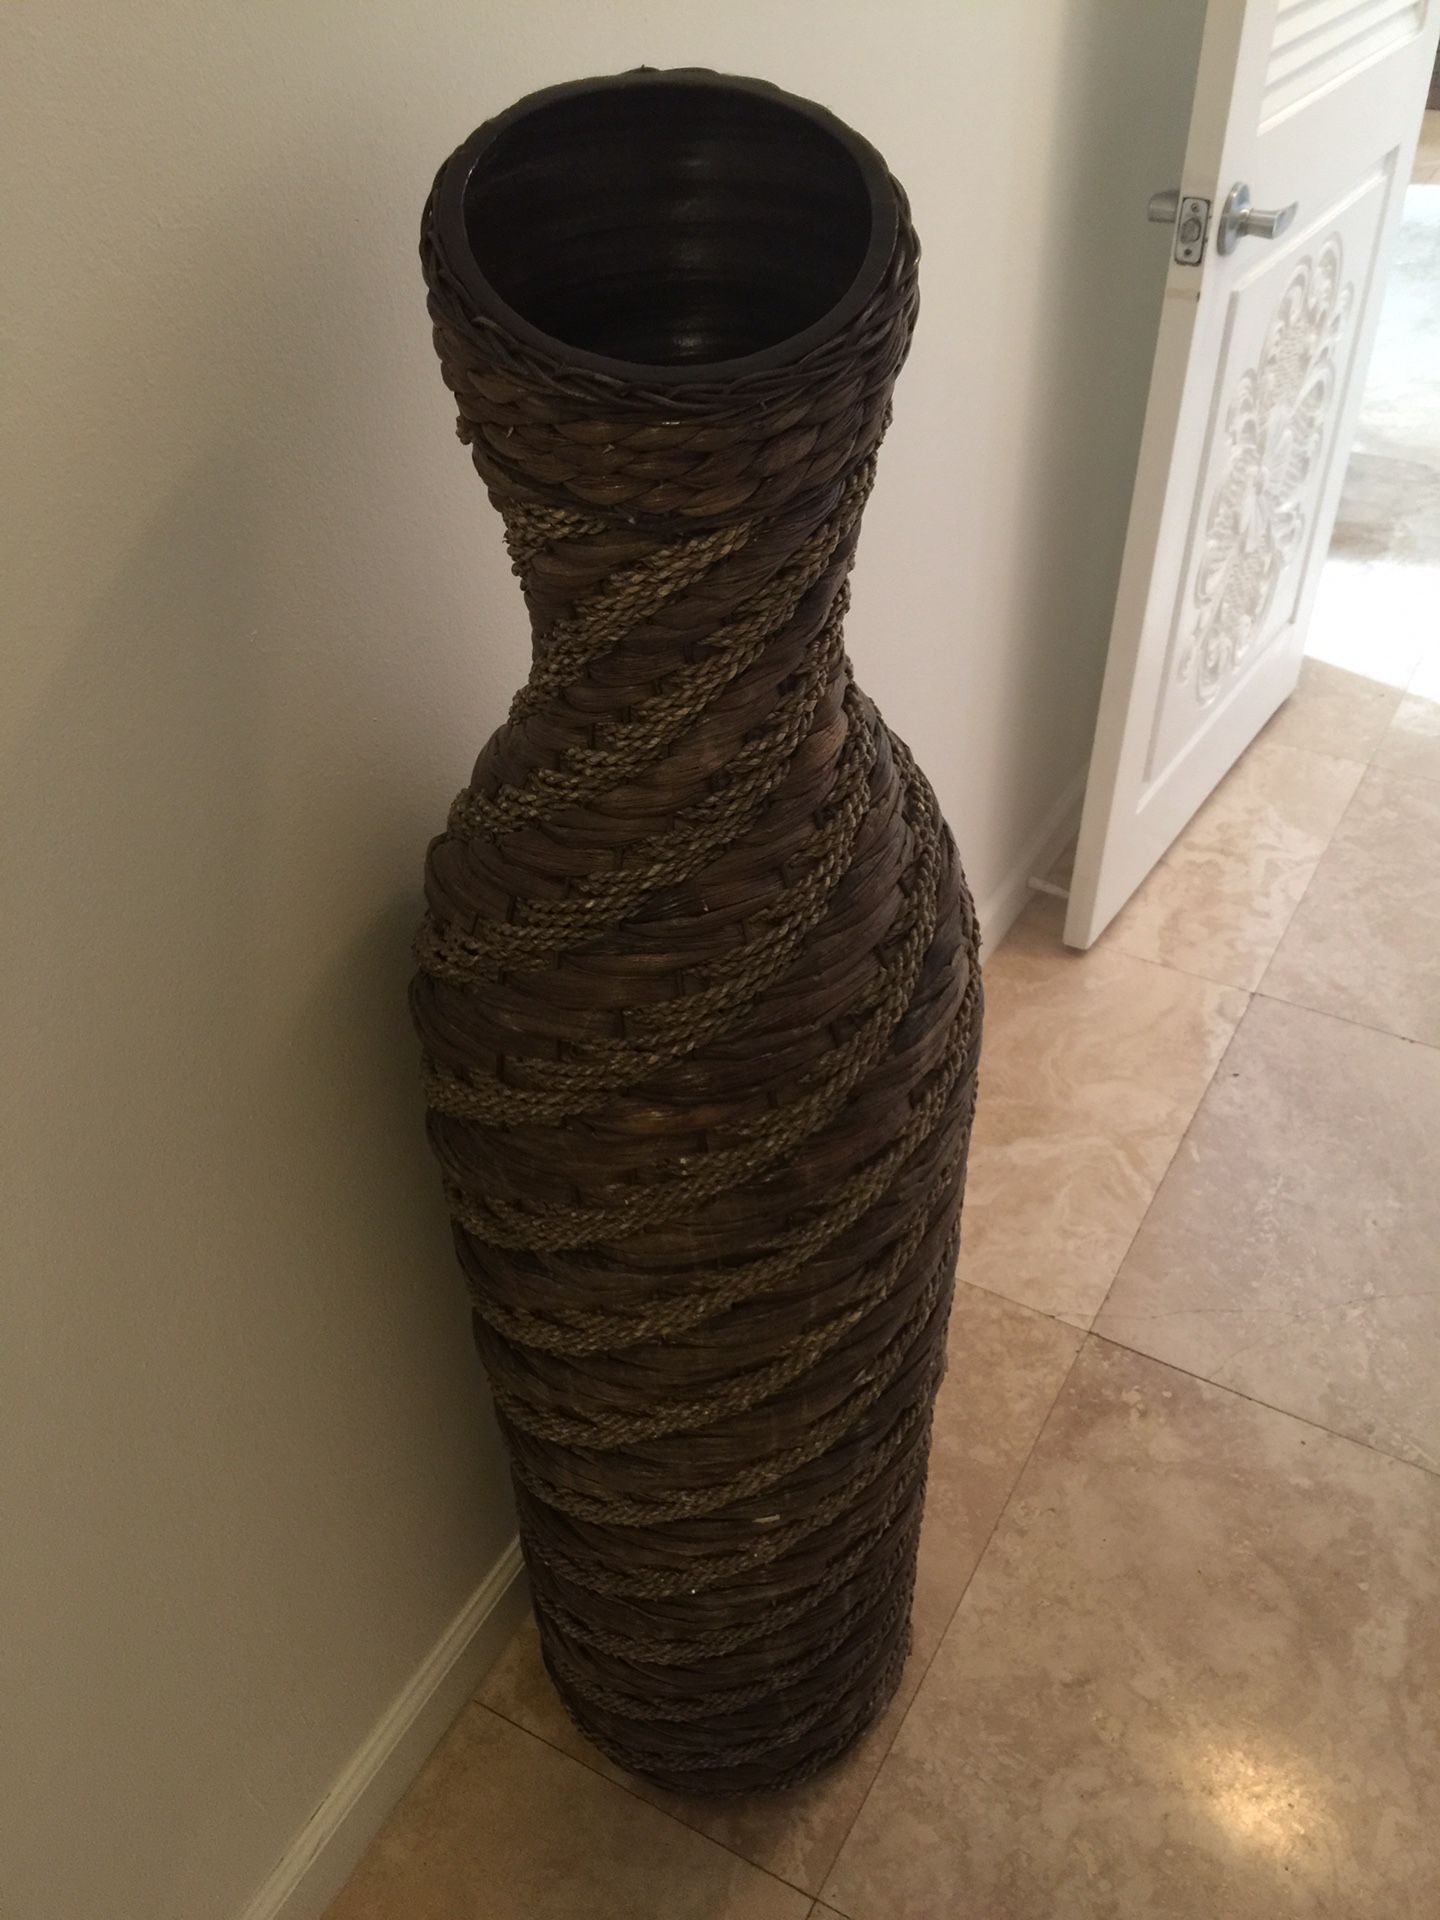 Tall wooden vase